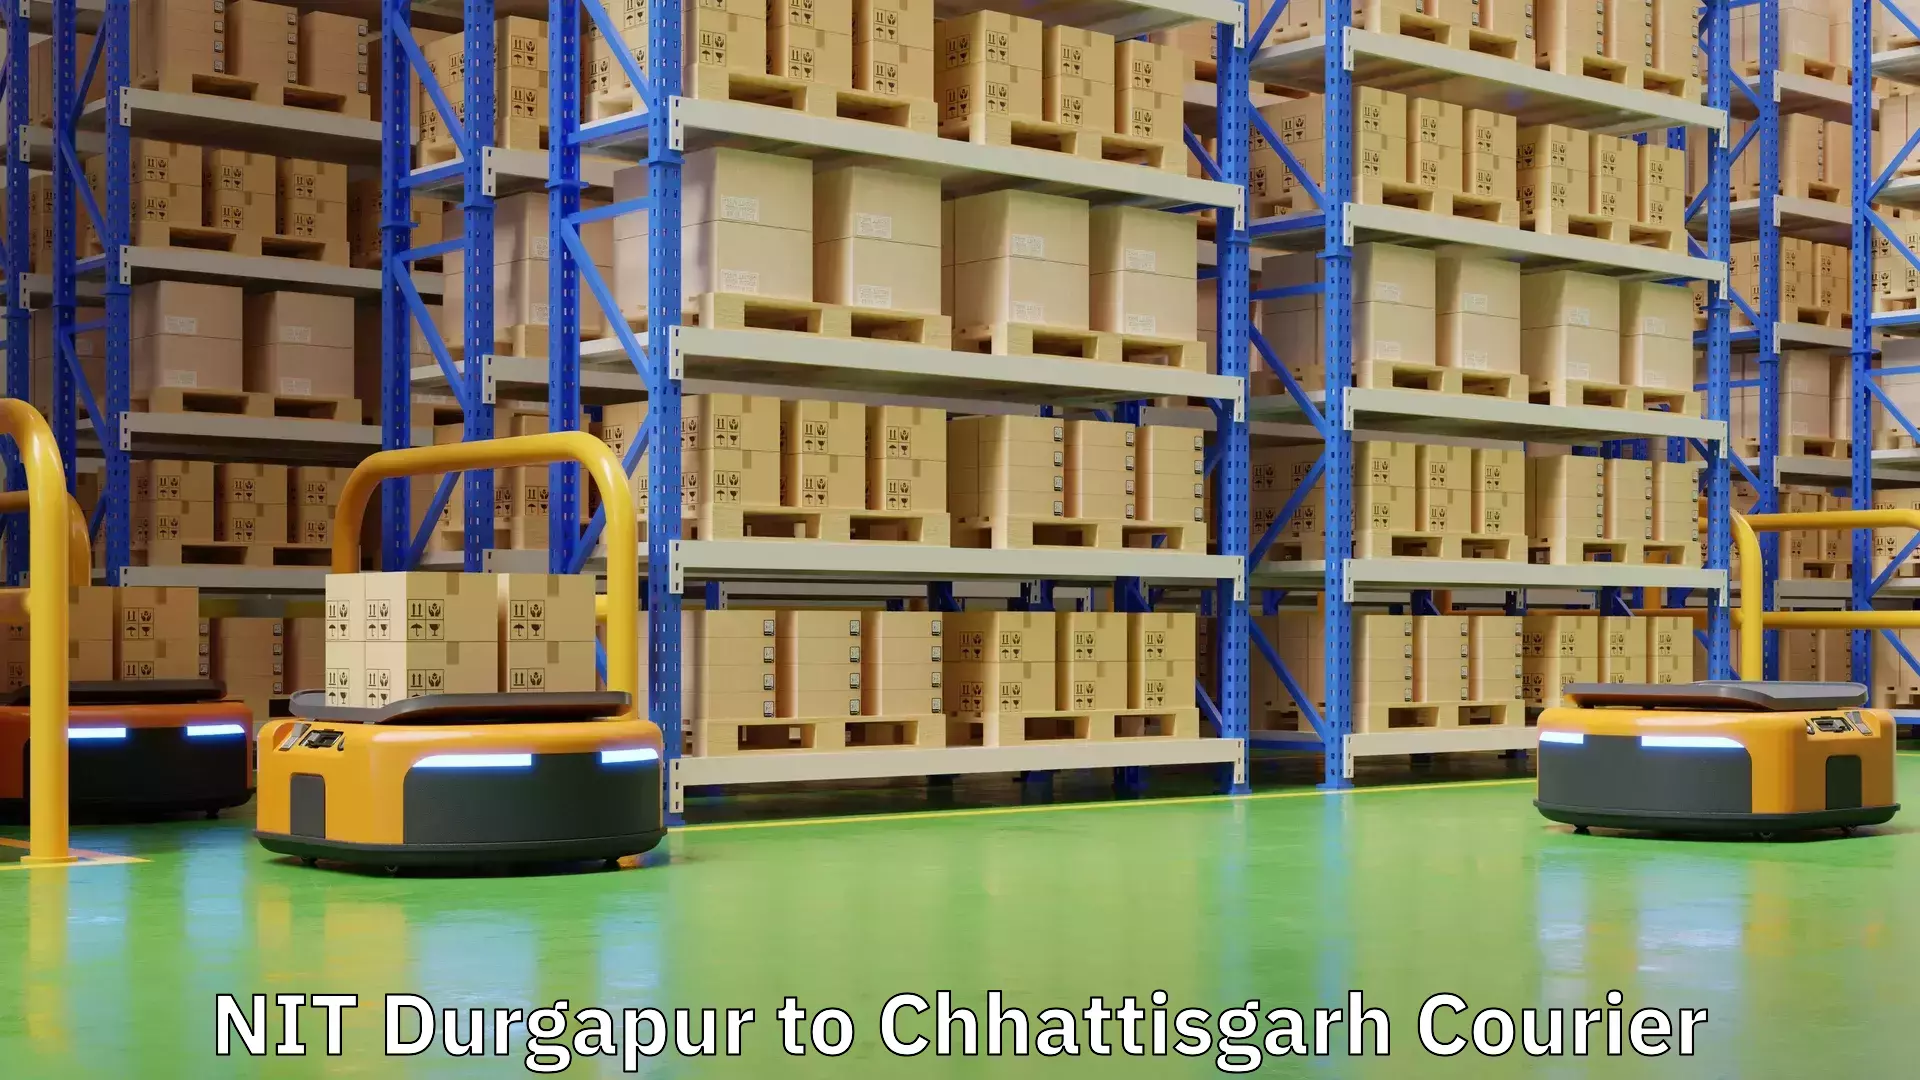 On-demand courier NIT Durgapur to Chhattisgarh